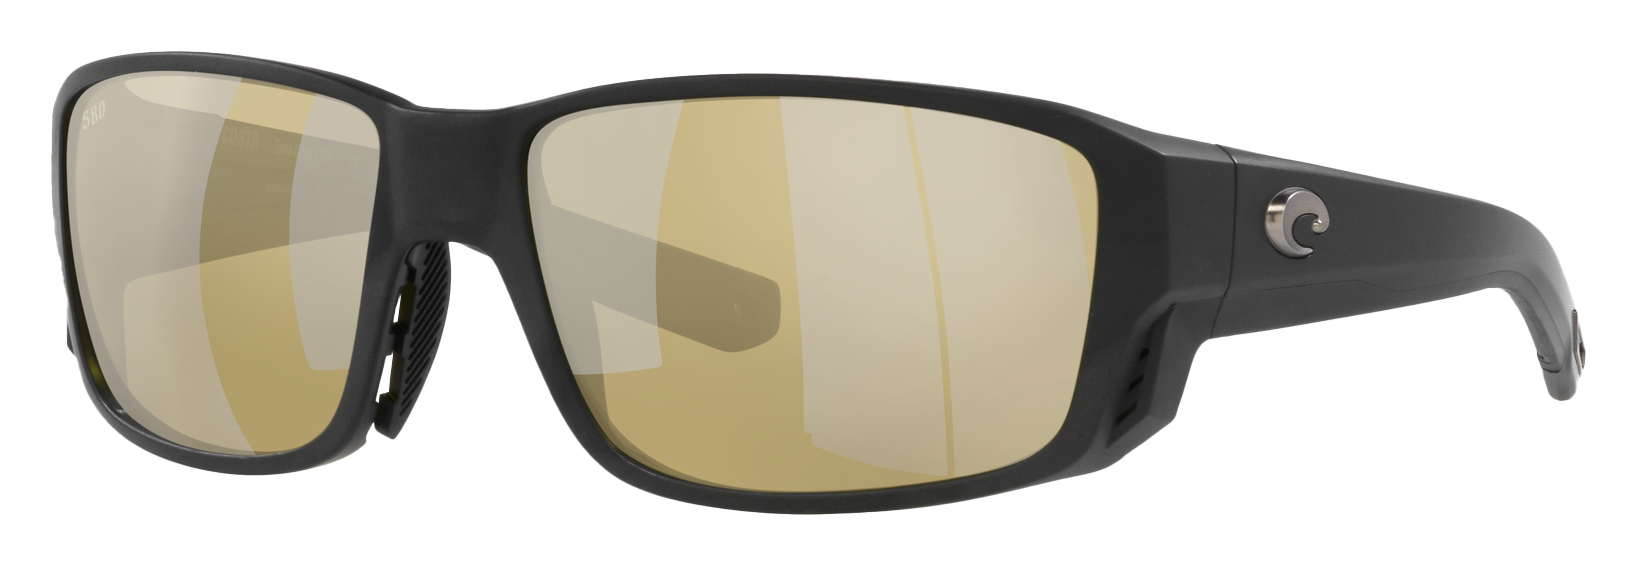 Costa Del Mar Tuna Alley PRO 580G Glass Polarized Sunglasses - Matte Black/Sunrise Silver Mirror - Large